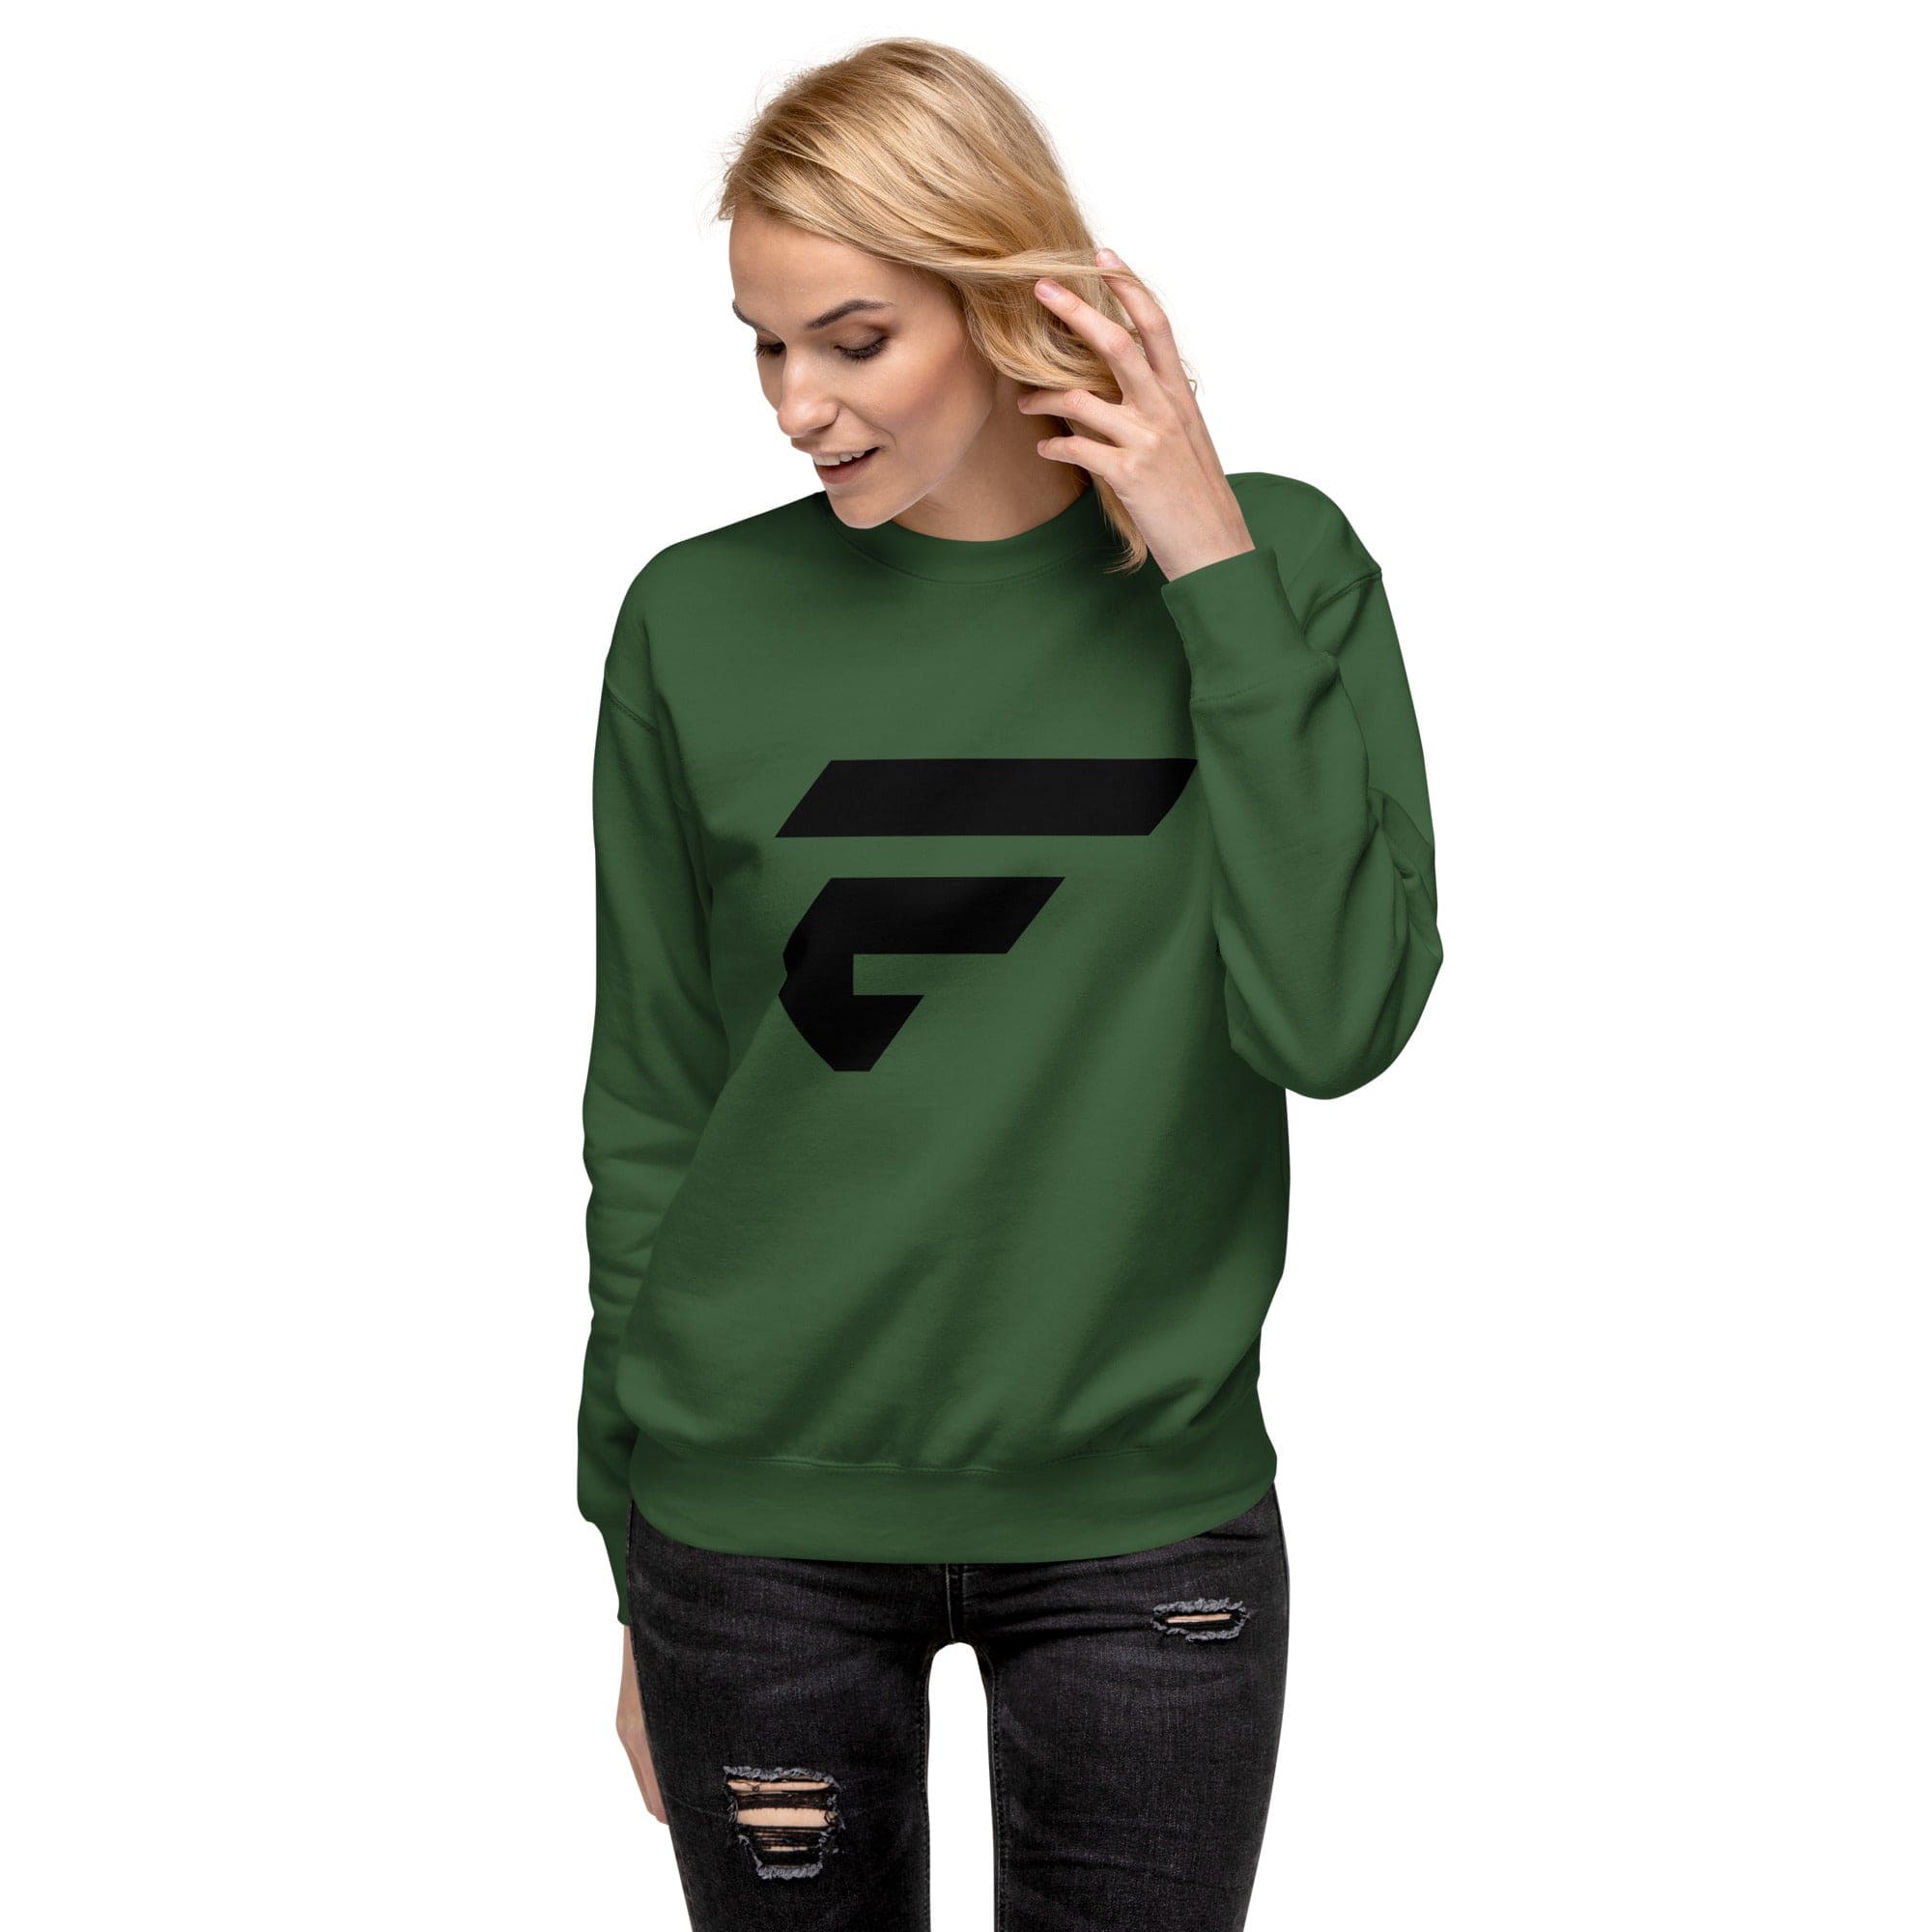 Green unisex sweatshirt with Fire Cornhole F logo in black